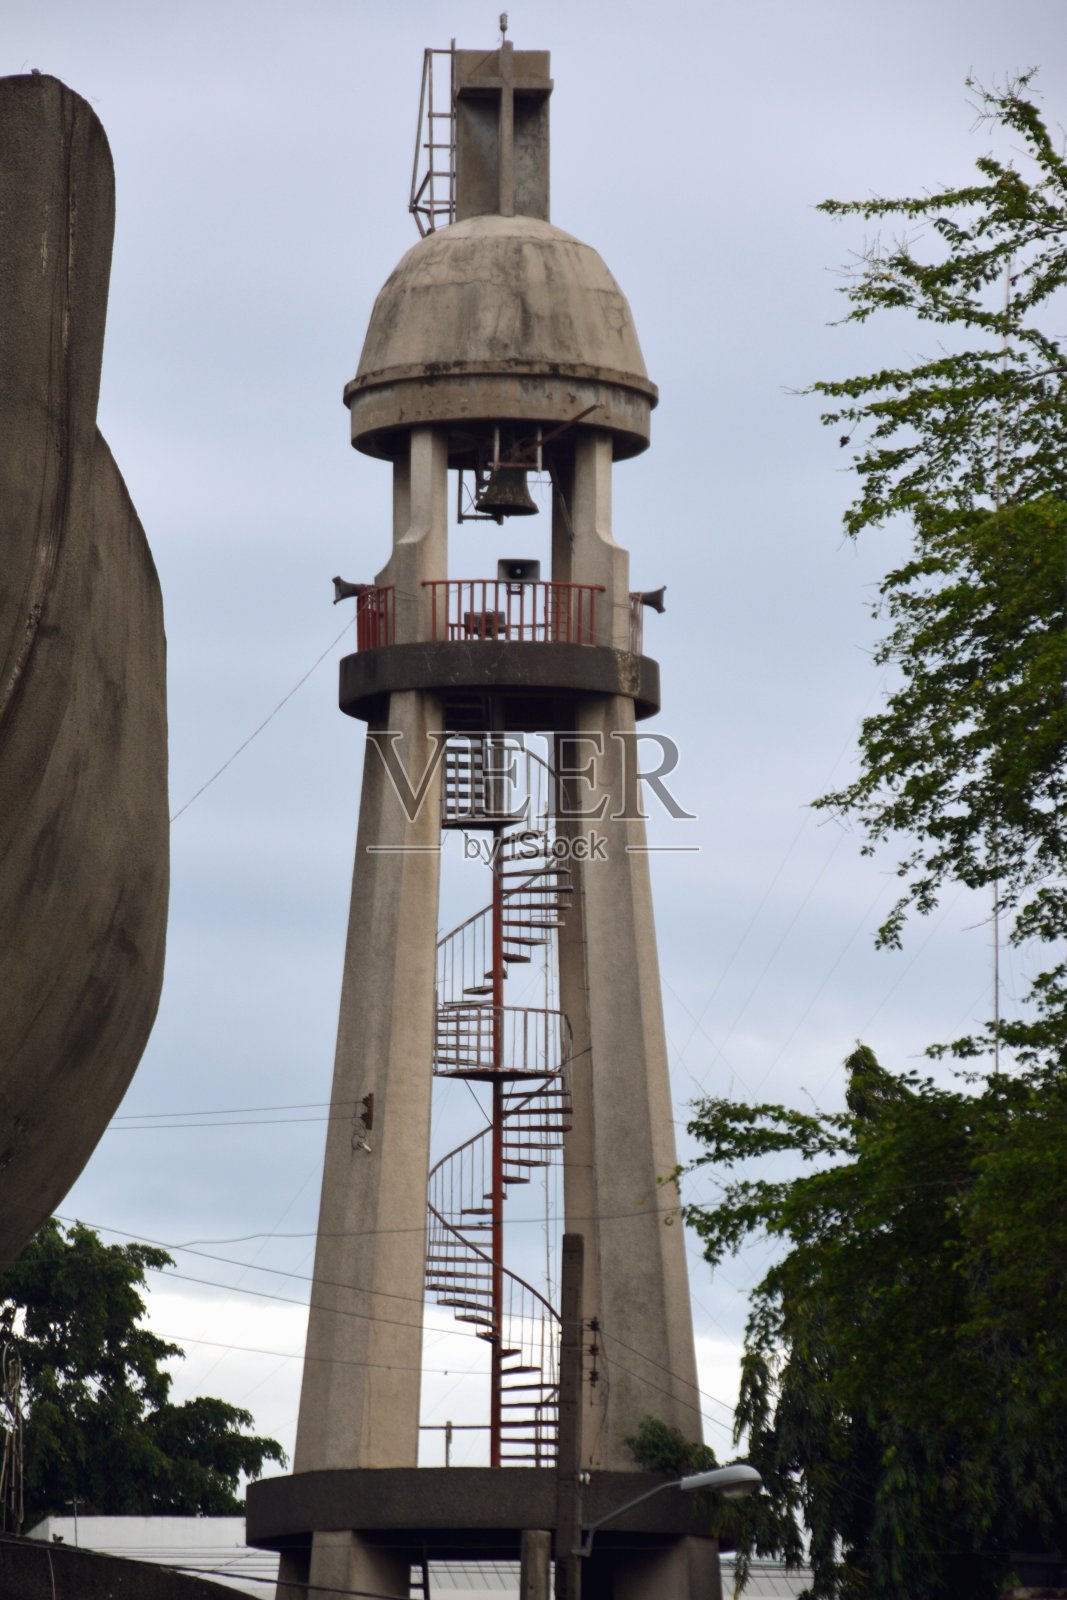 菲律宾达沃市钟楼照片摄影图片